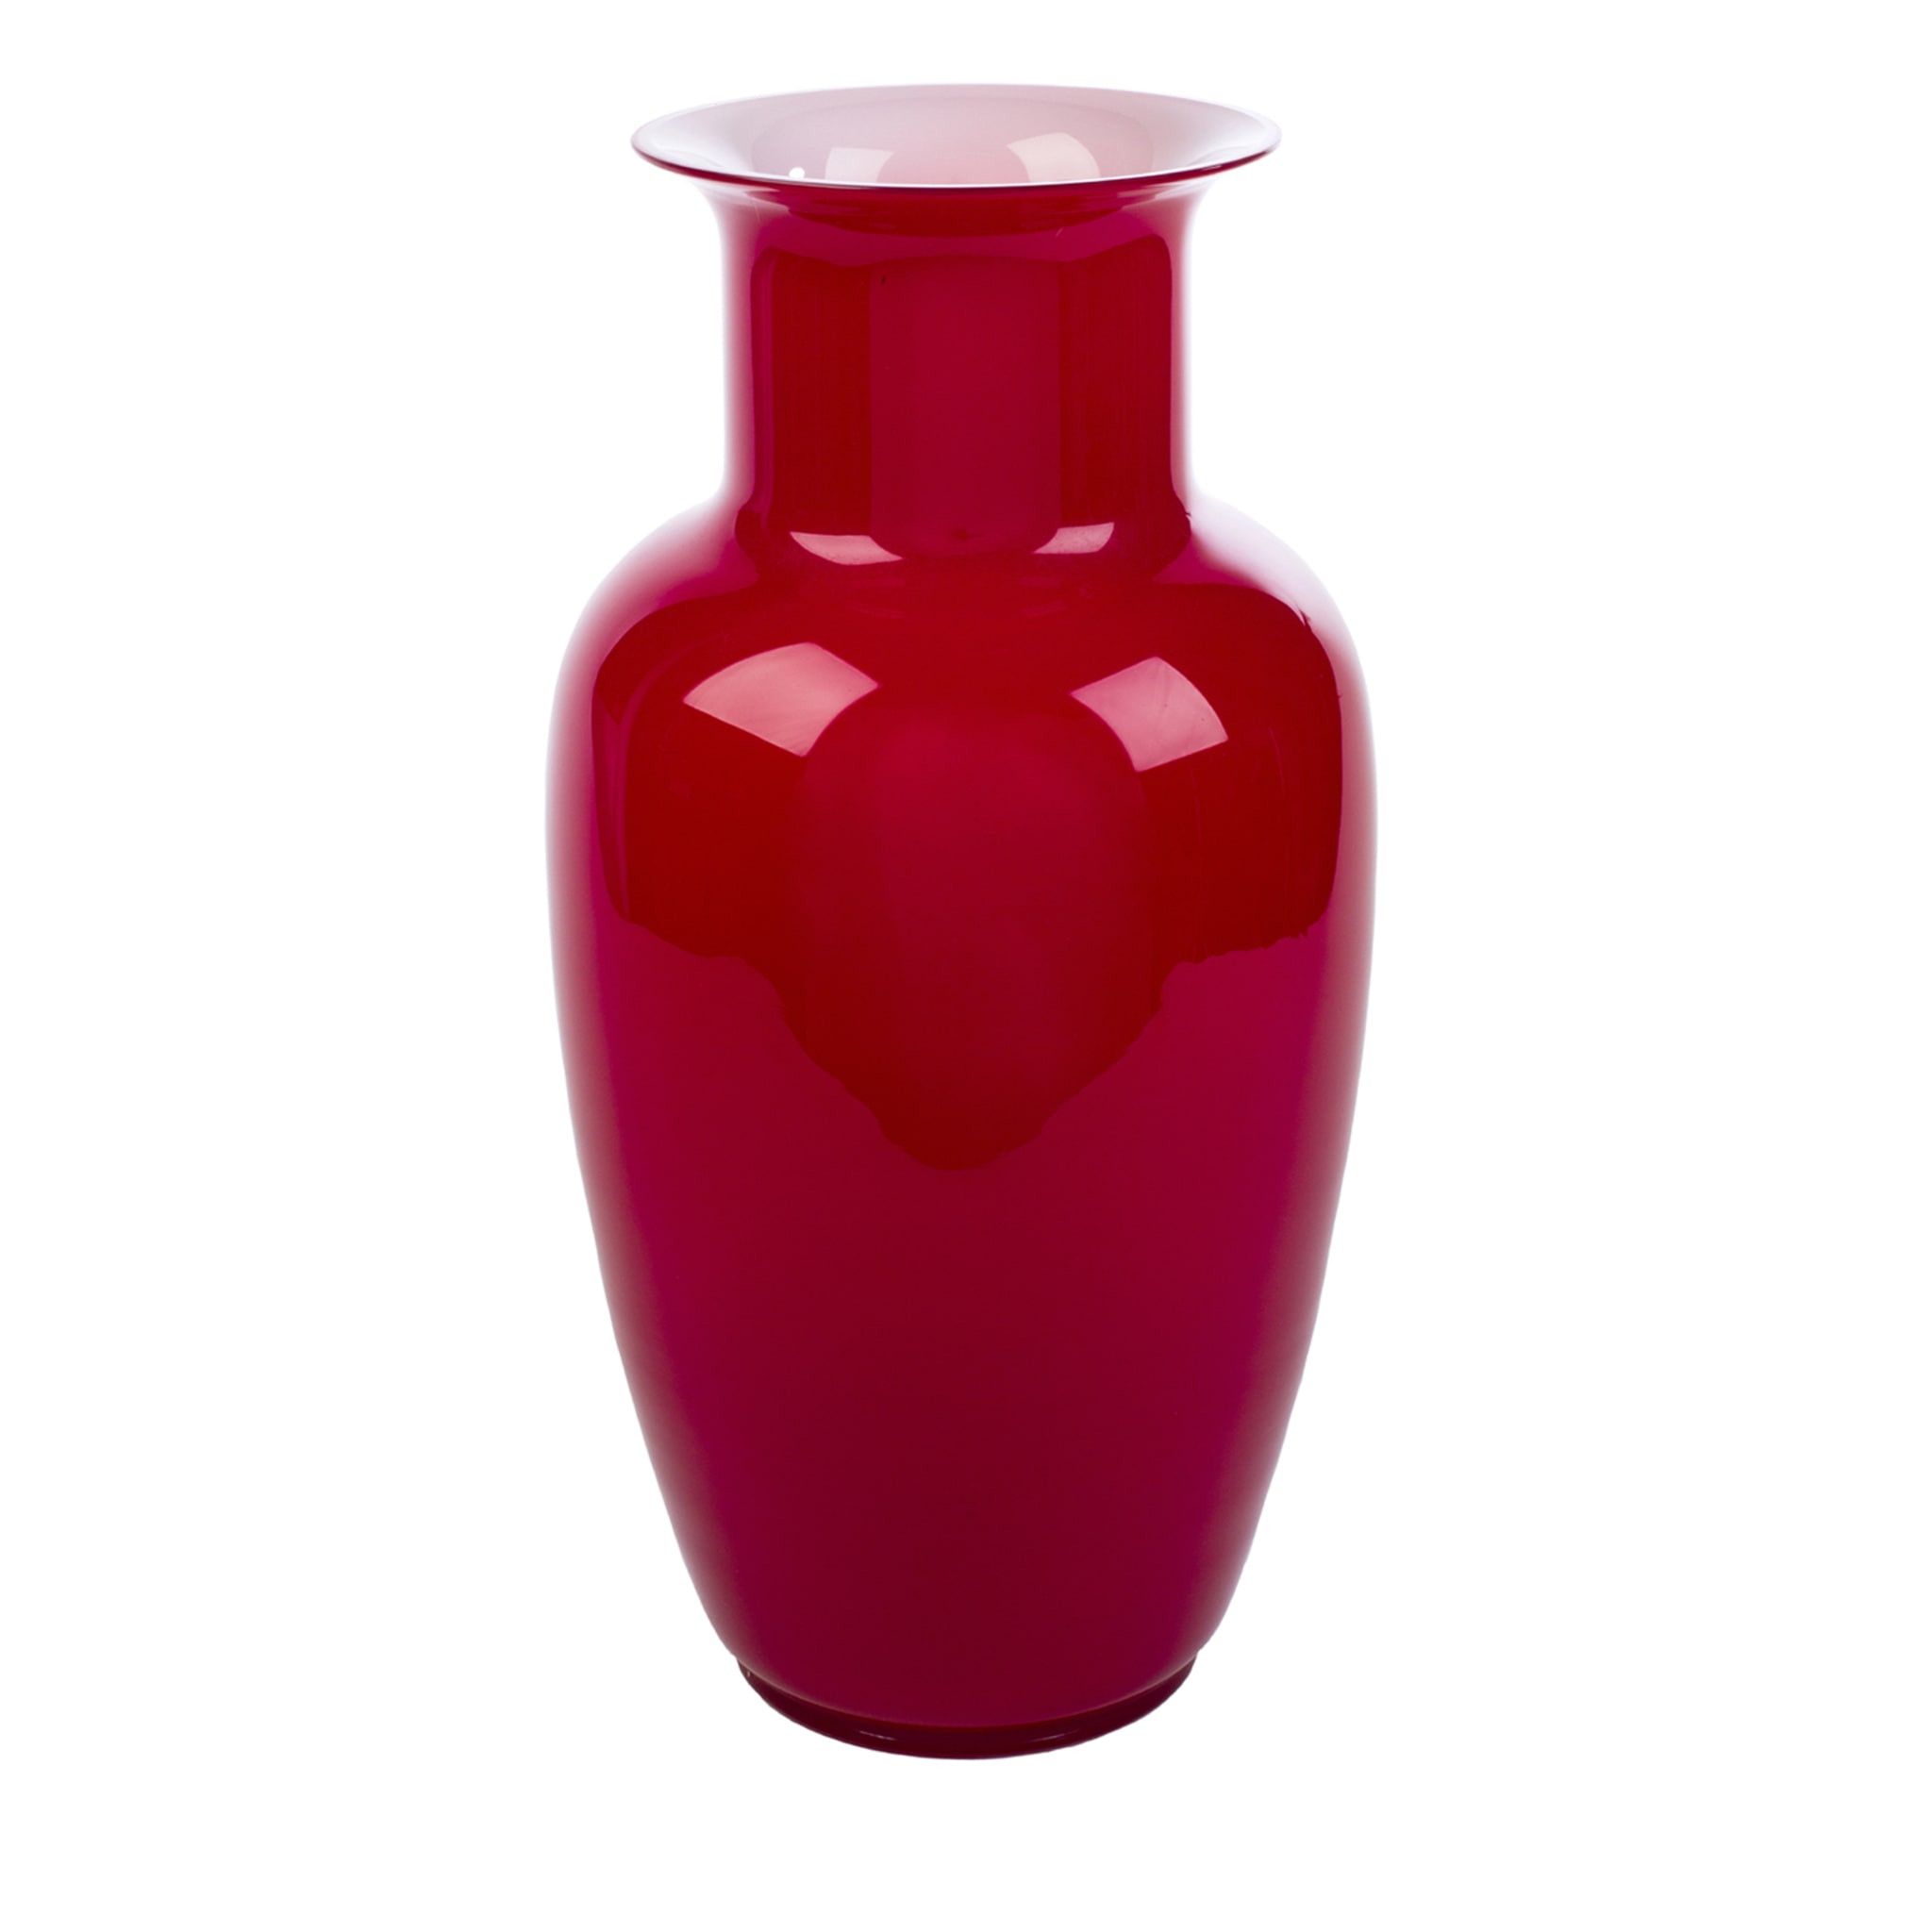 Demajo Incamiciato Red and White Vase - Main view